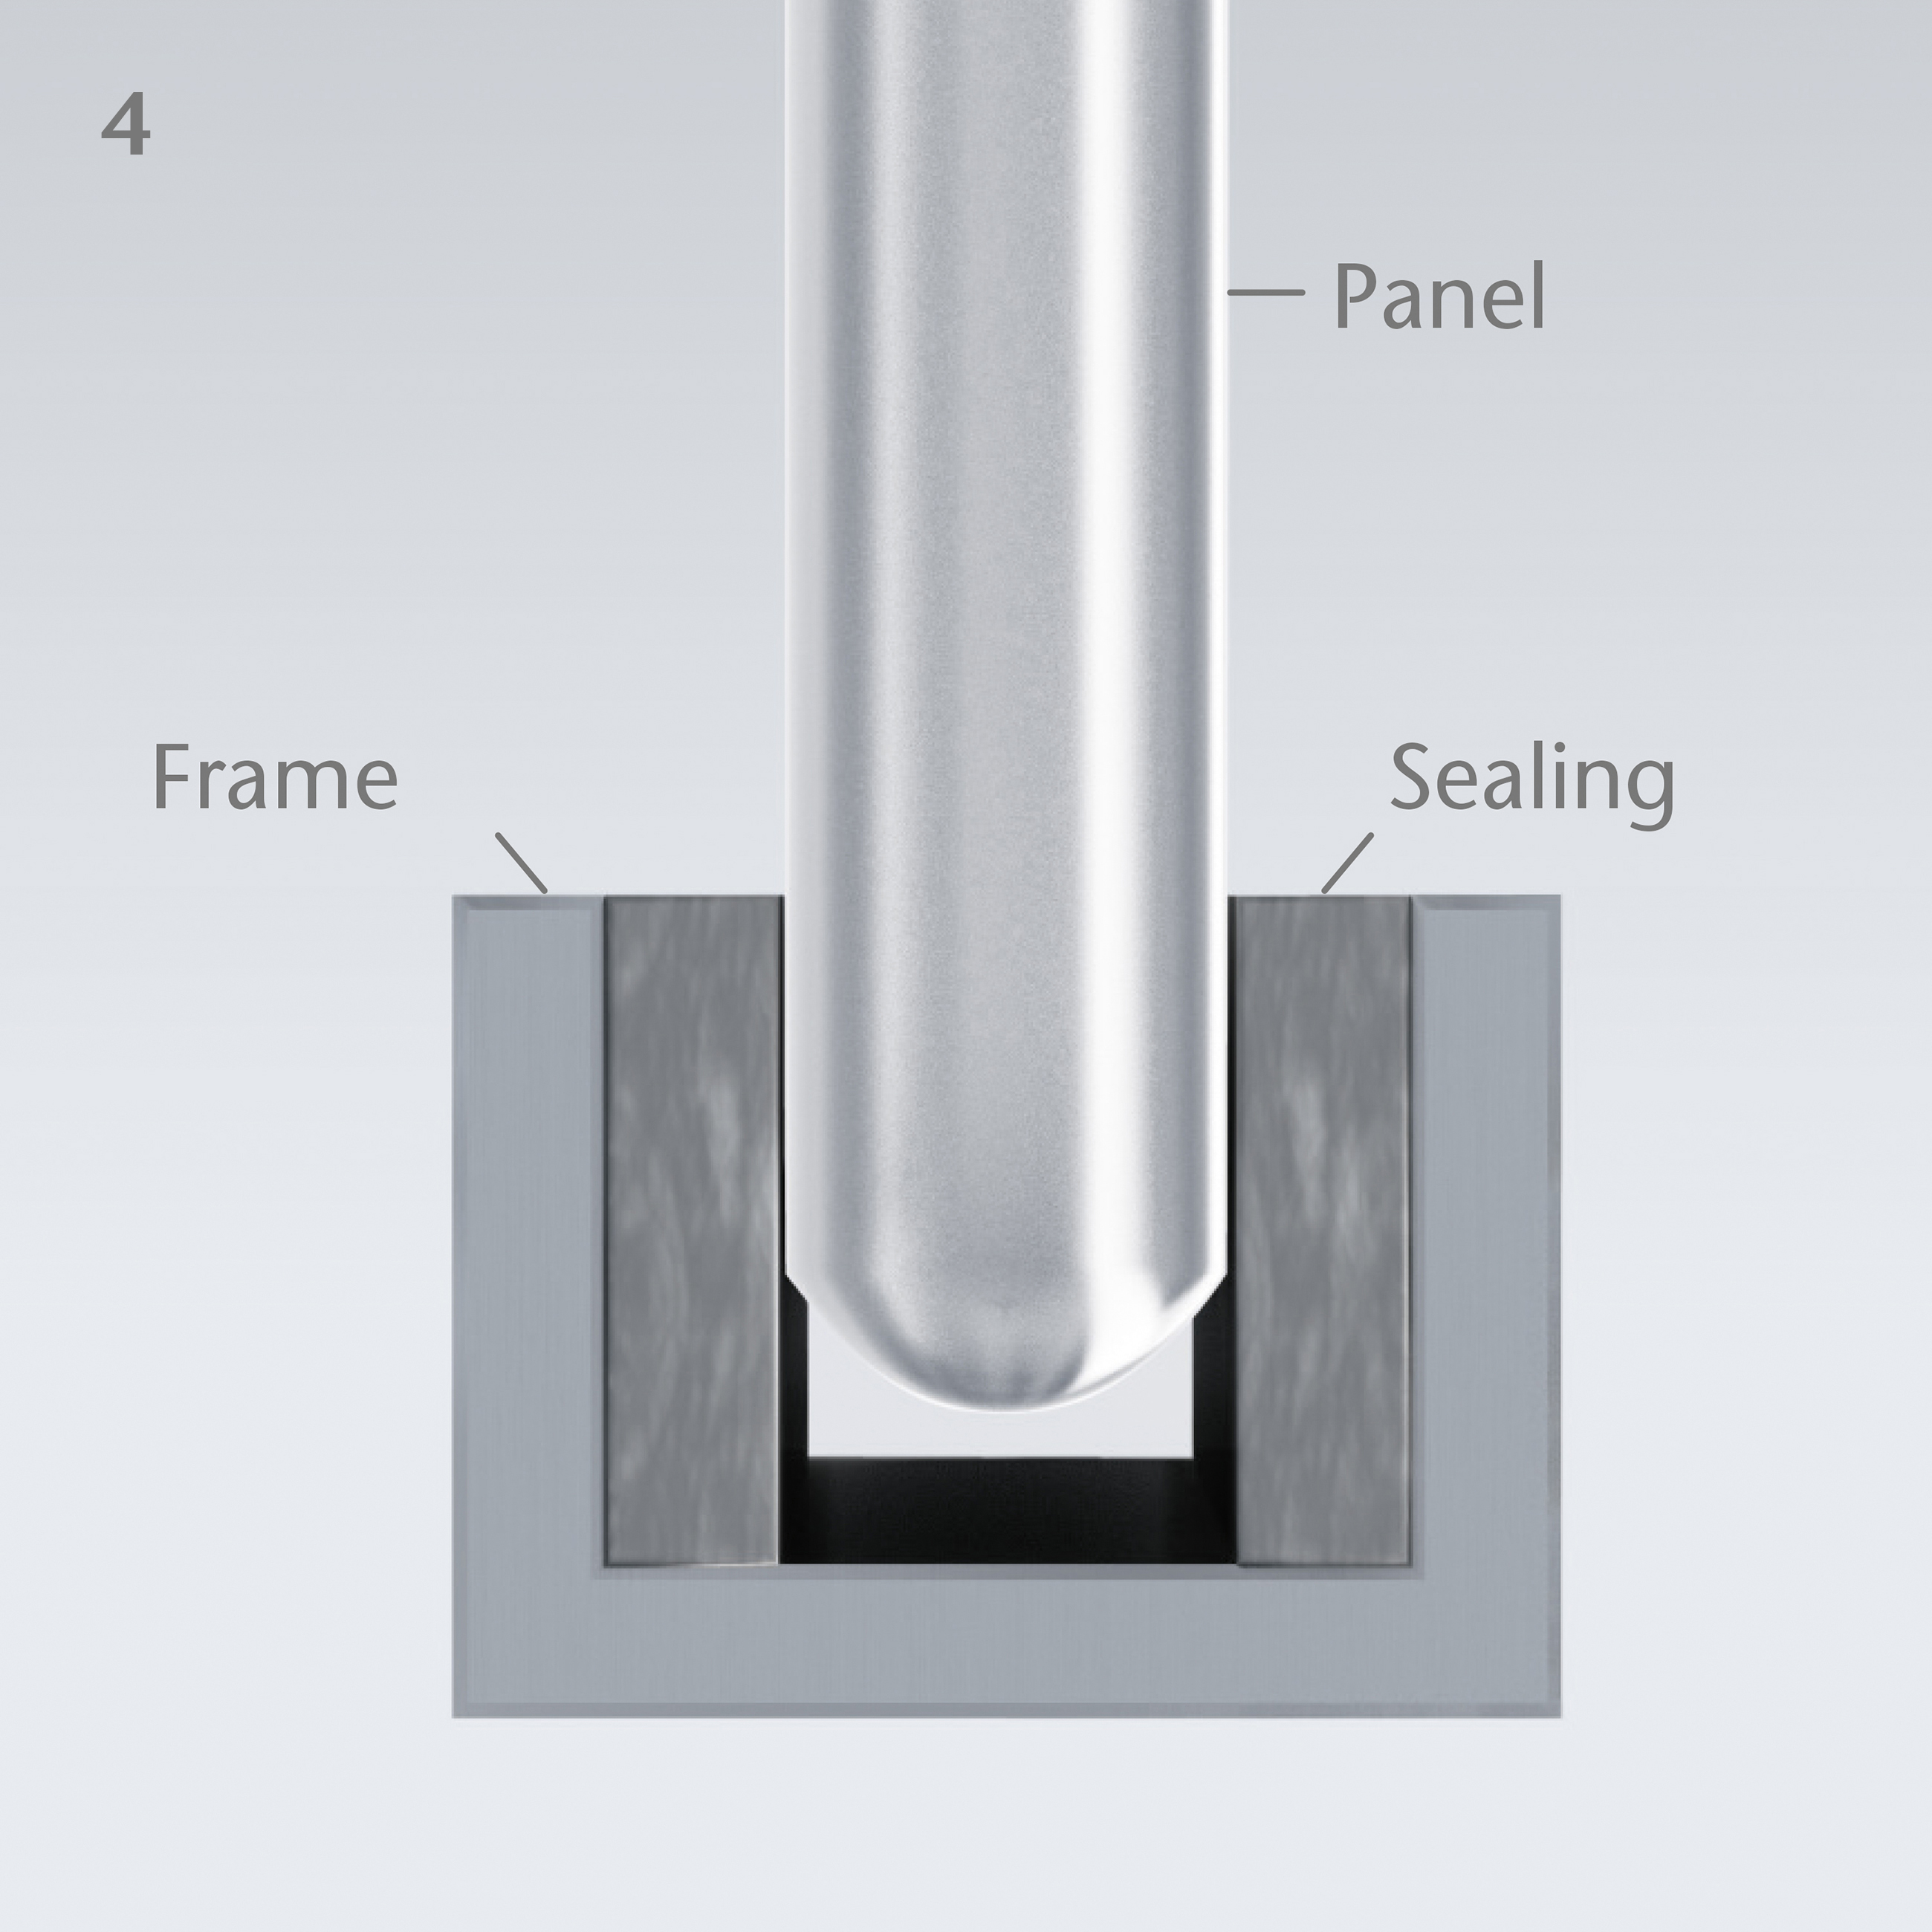 肖特 ROBAX® 微晶玻璃面板如何安装在框架内的示意图